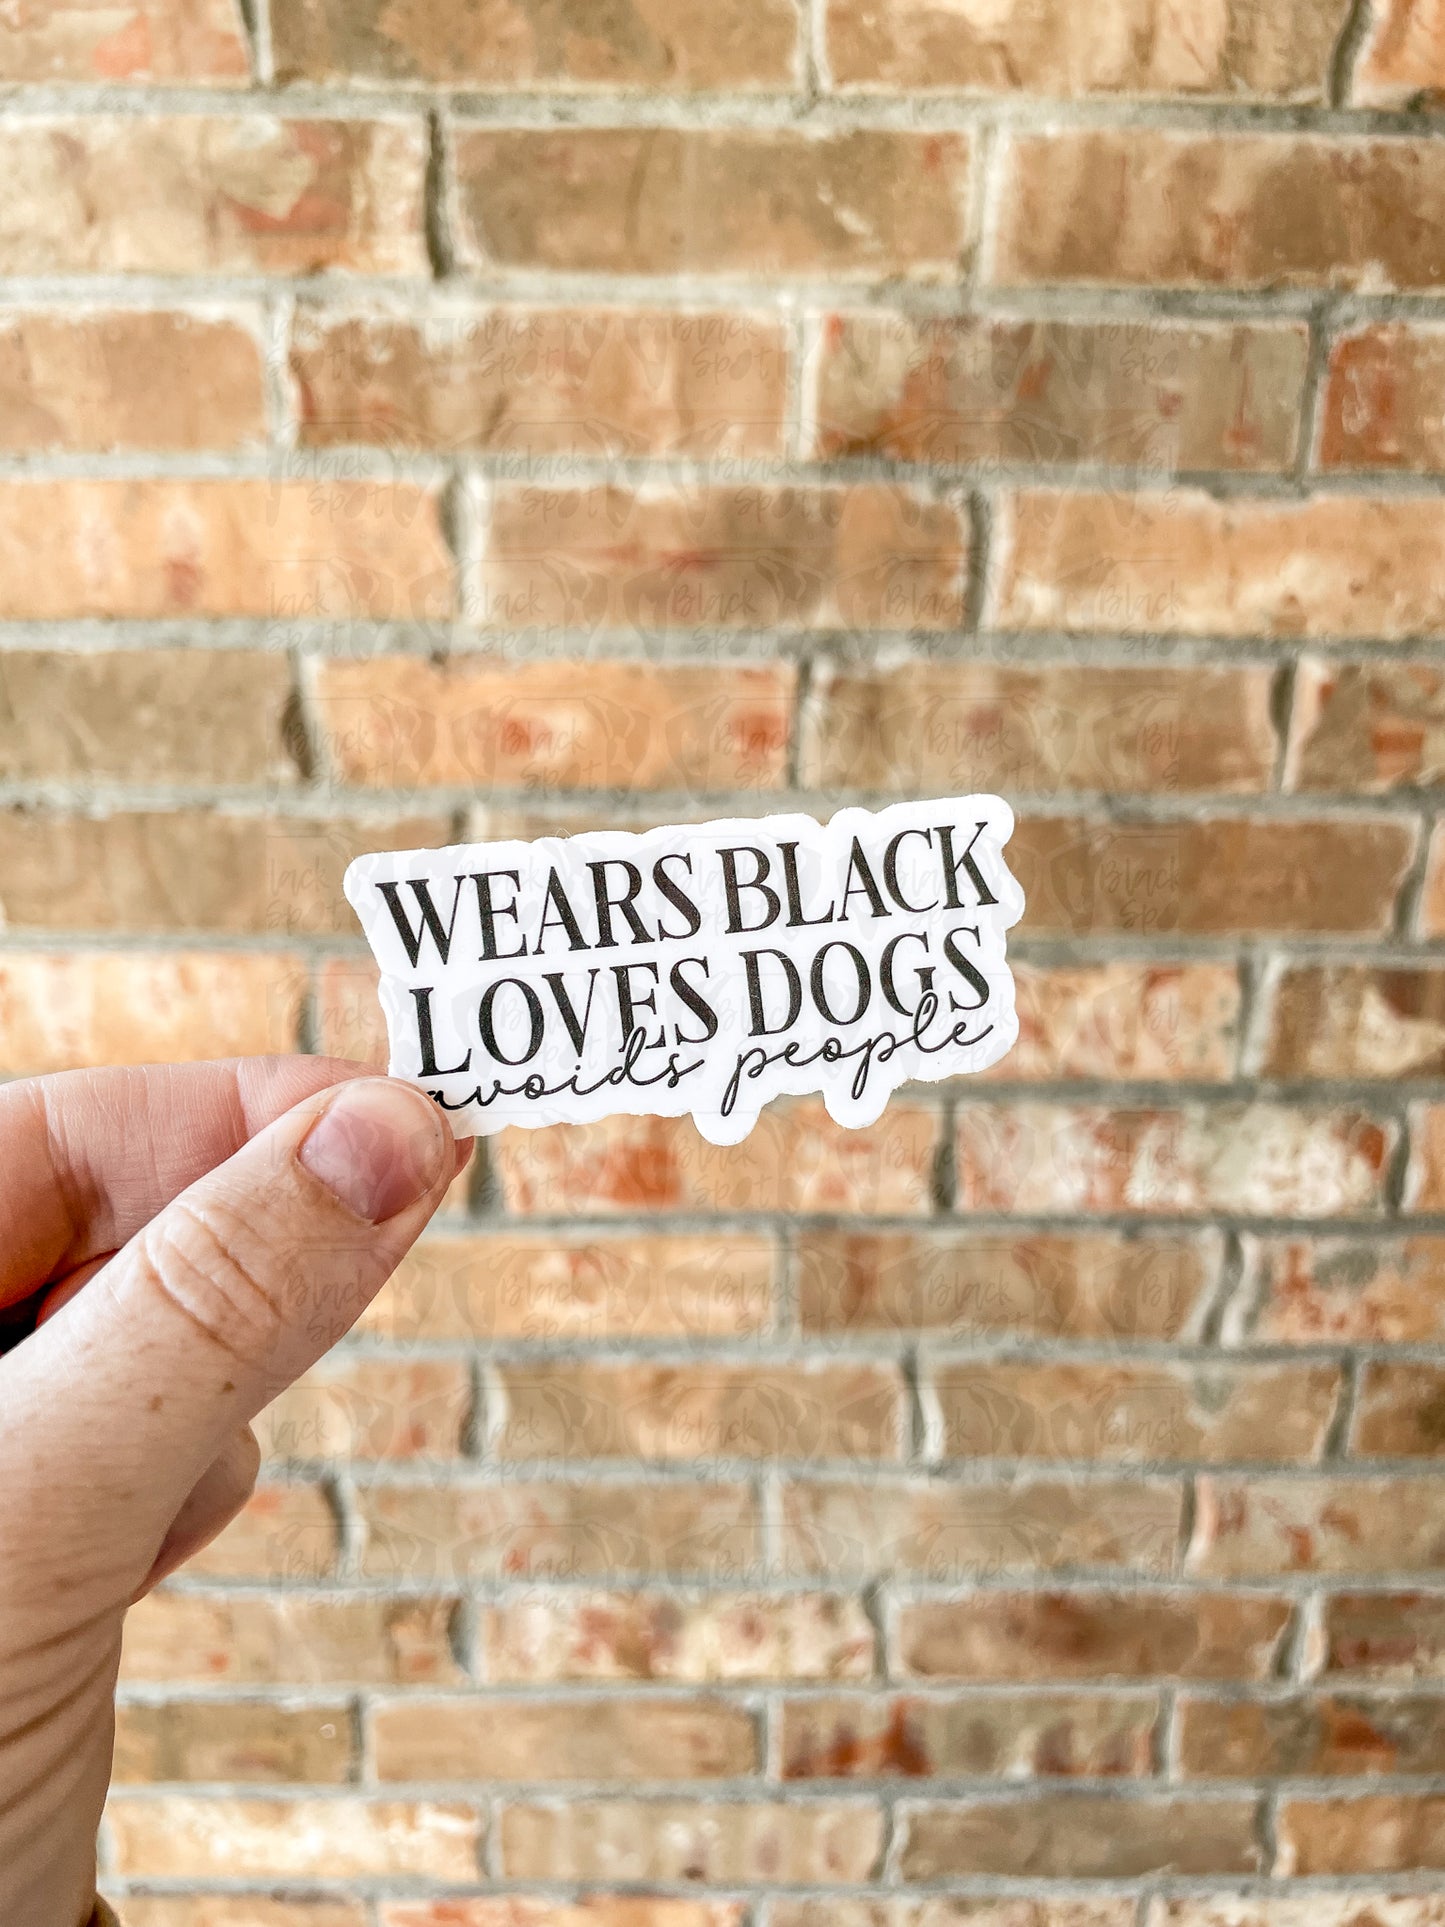 Wears Black Loves Dogs Avoids People Sticker